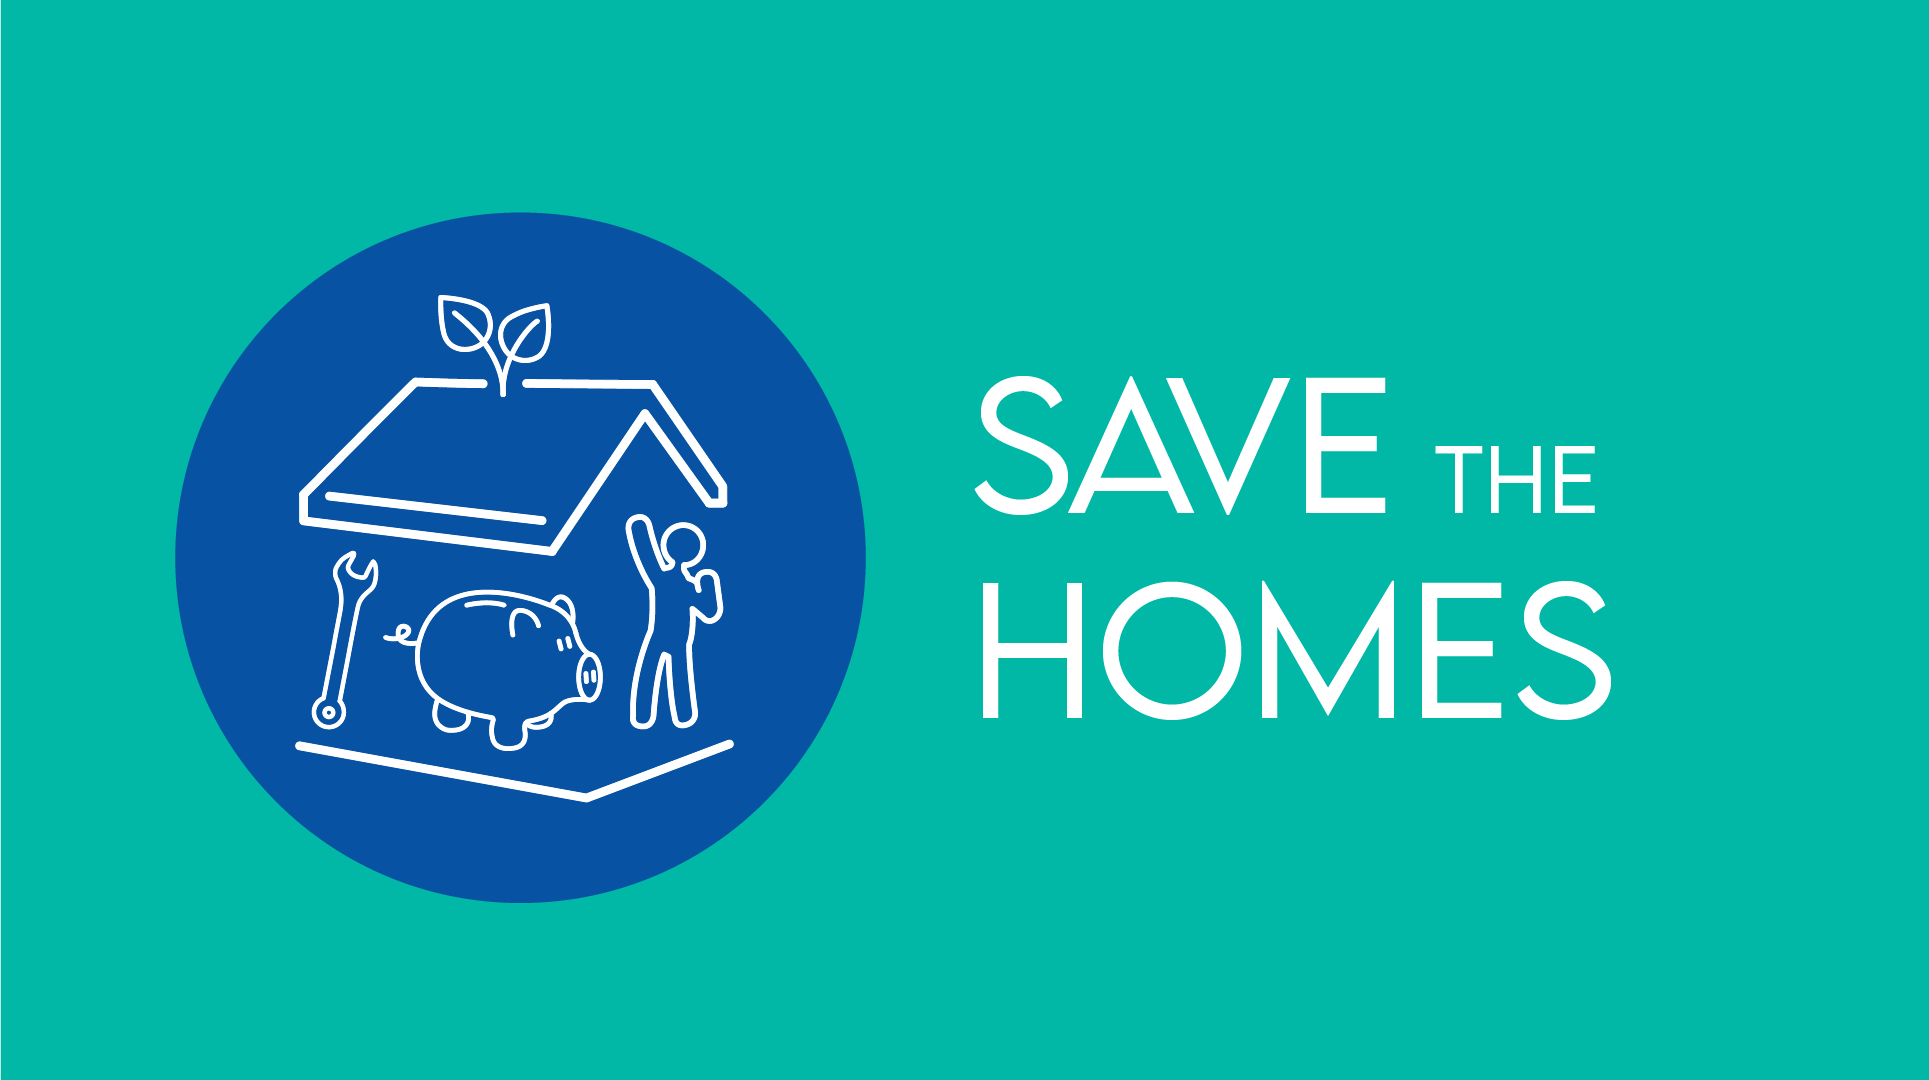 Banner con el logotipo del proyecto Savethehomes